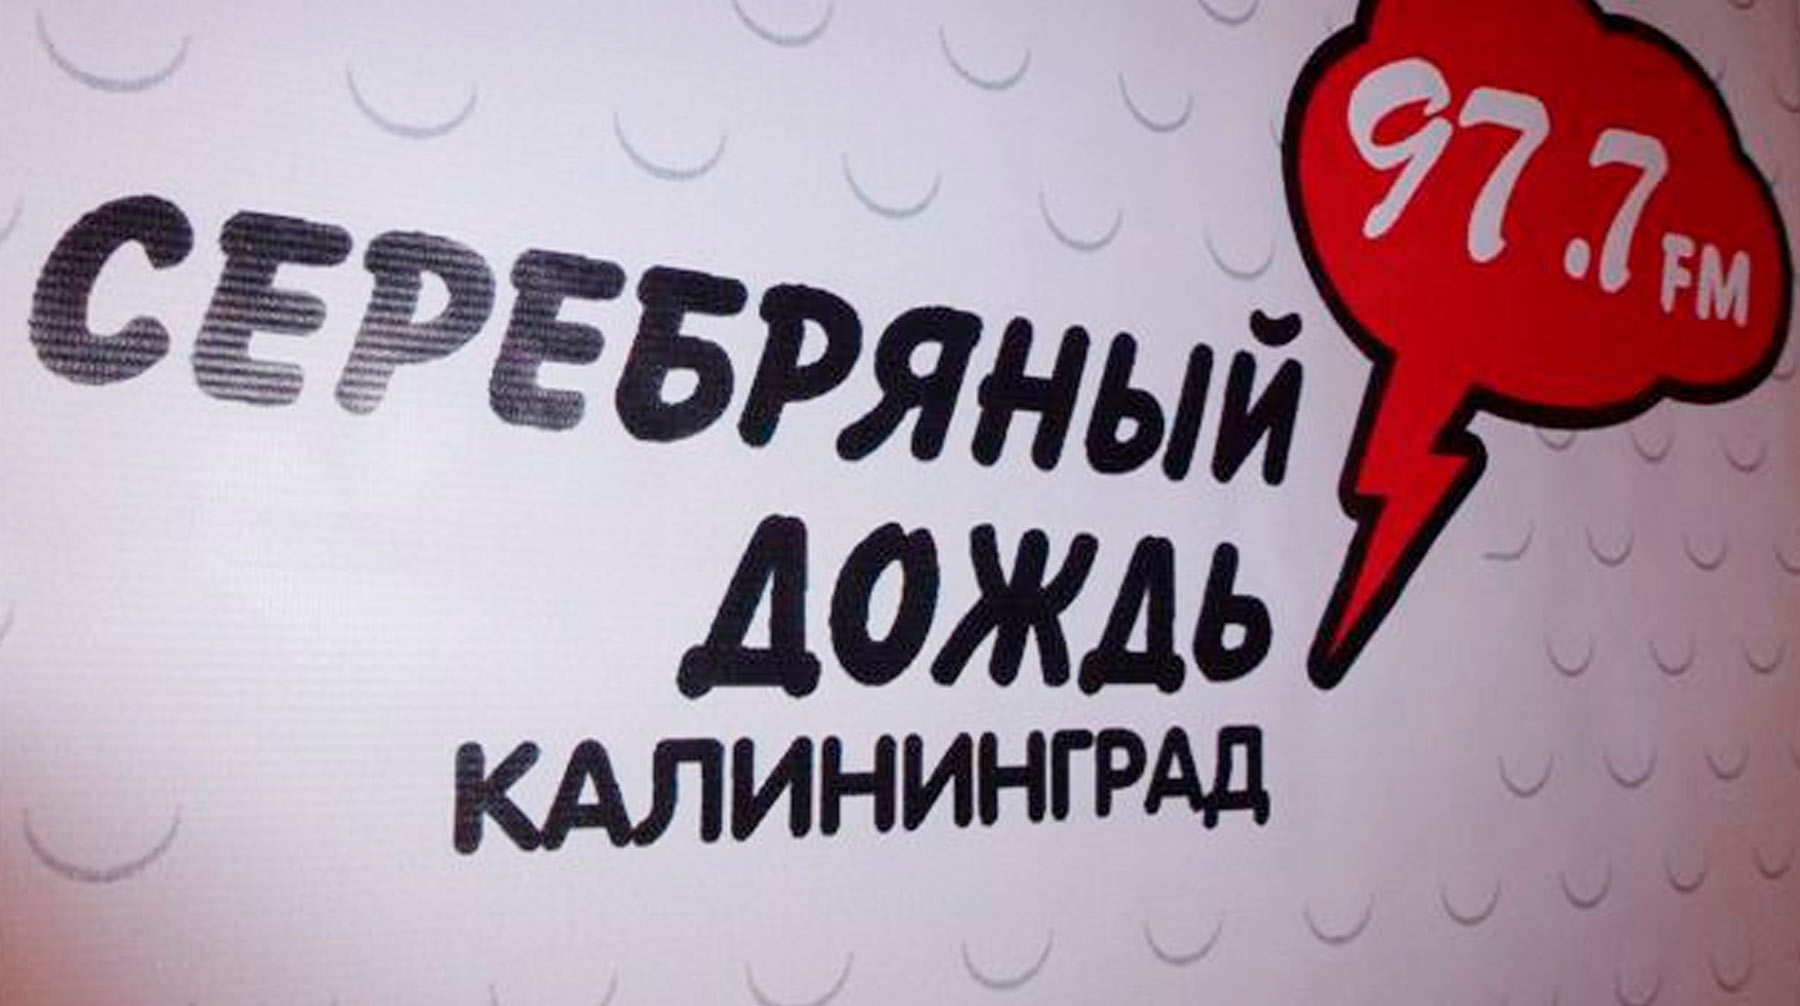 Директор СМИ считает государственные меры поддержки хорошими, но недостаточными Фото: ©  Вконтакте / Серебряный дождь